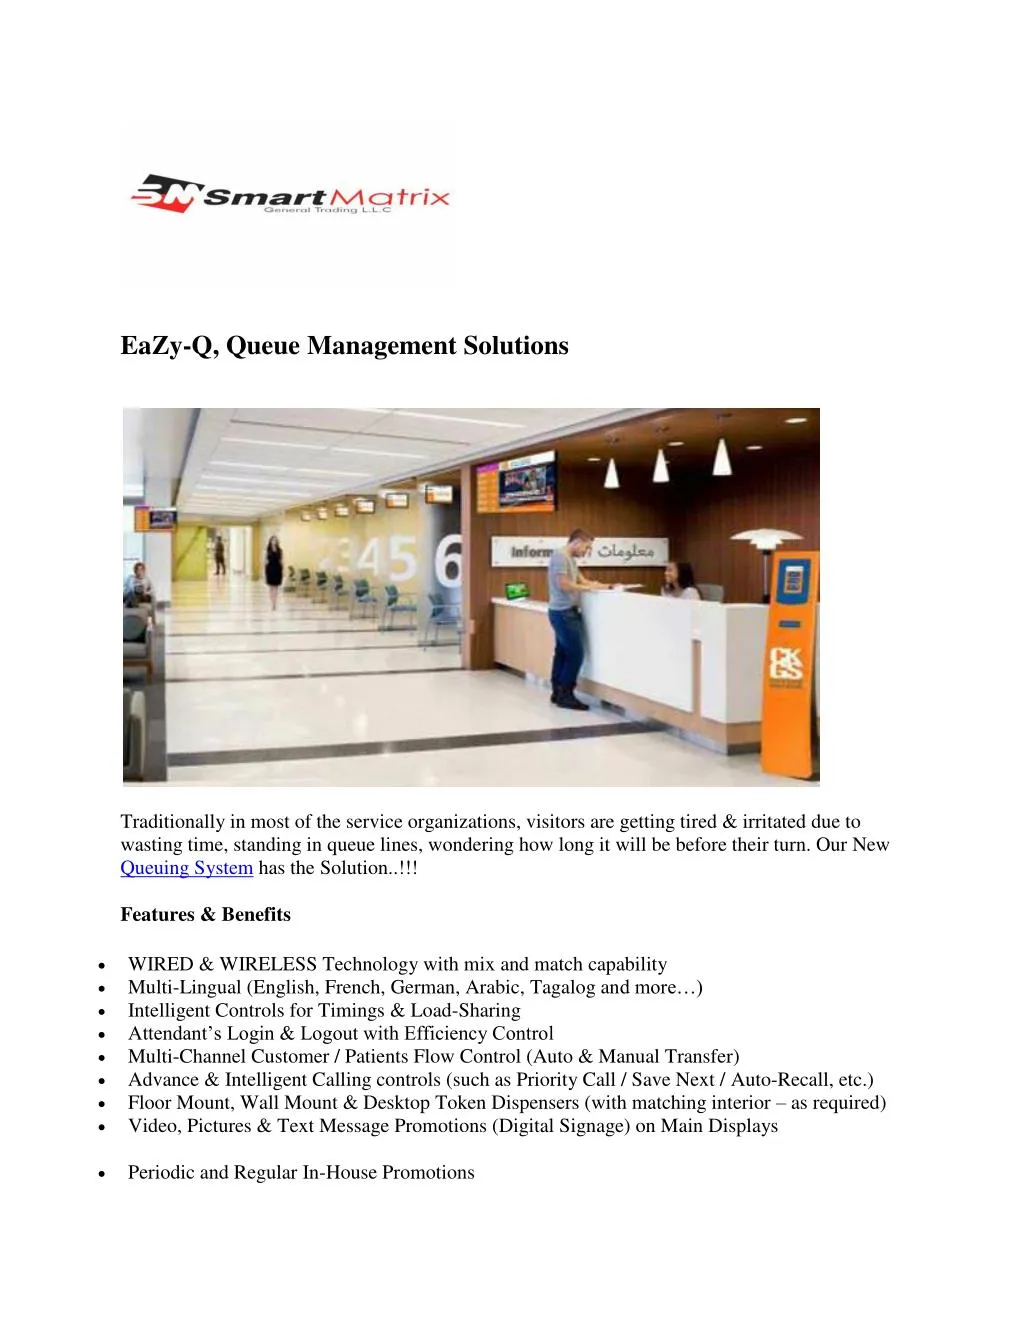 eazy q queue management solutions